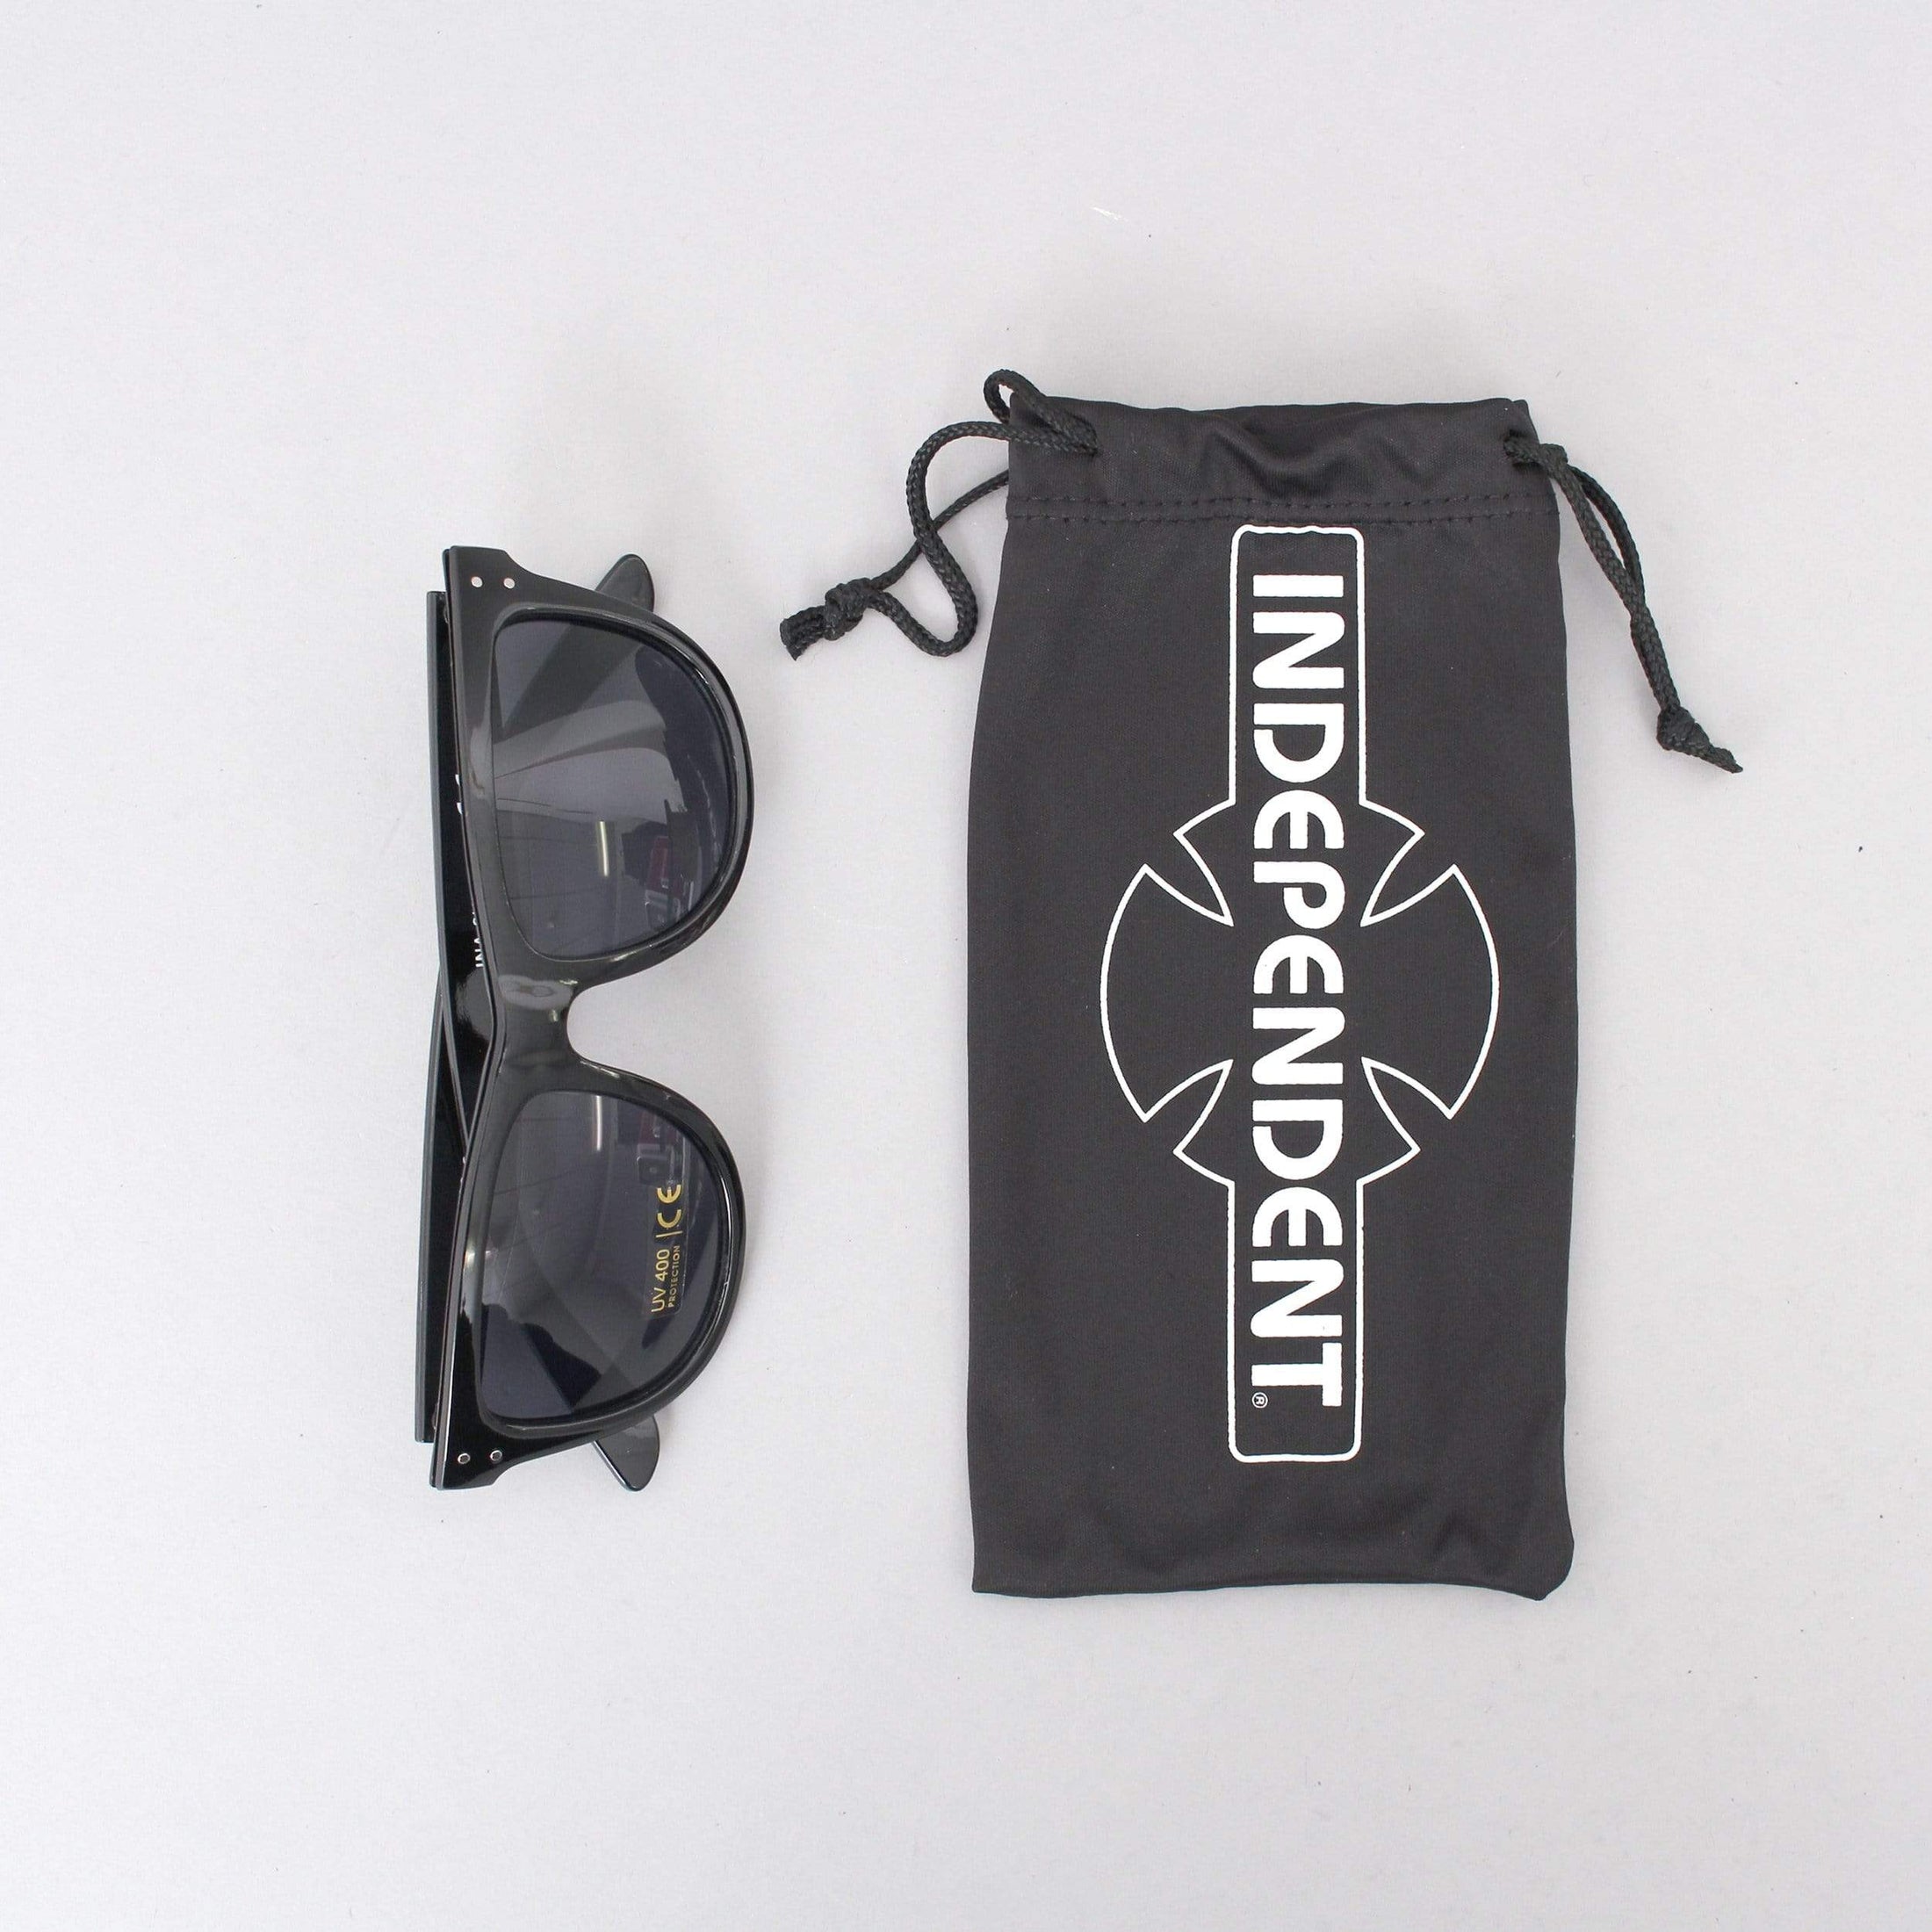 Independent Manner Sunglasses Black